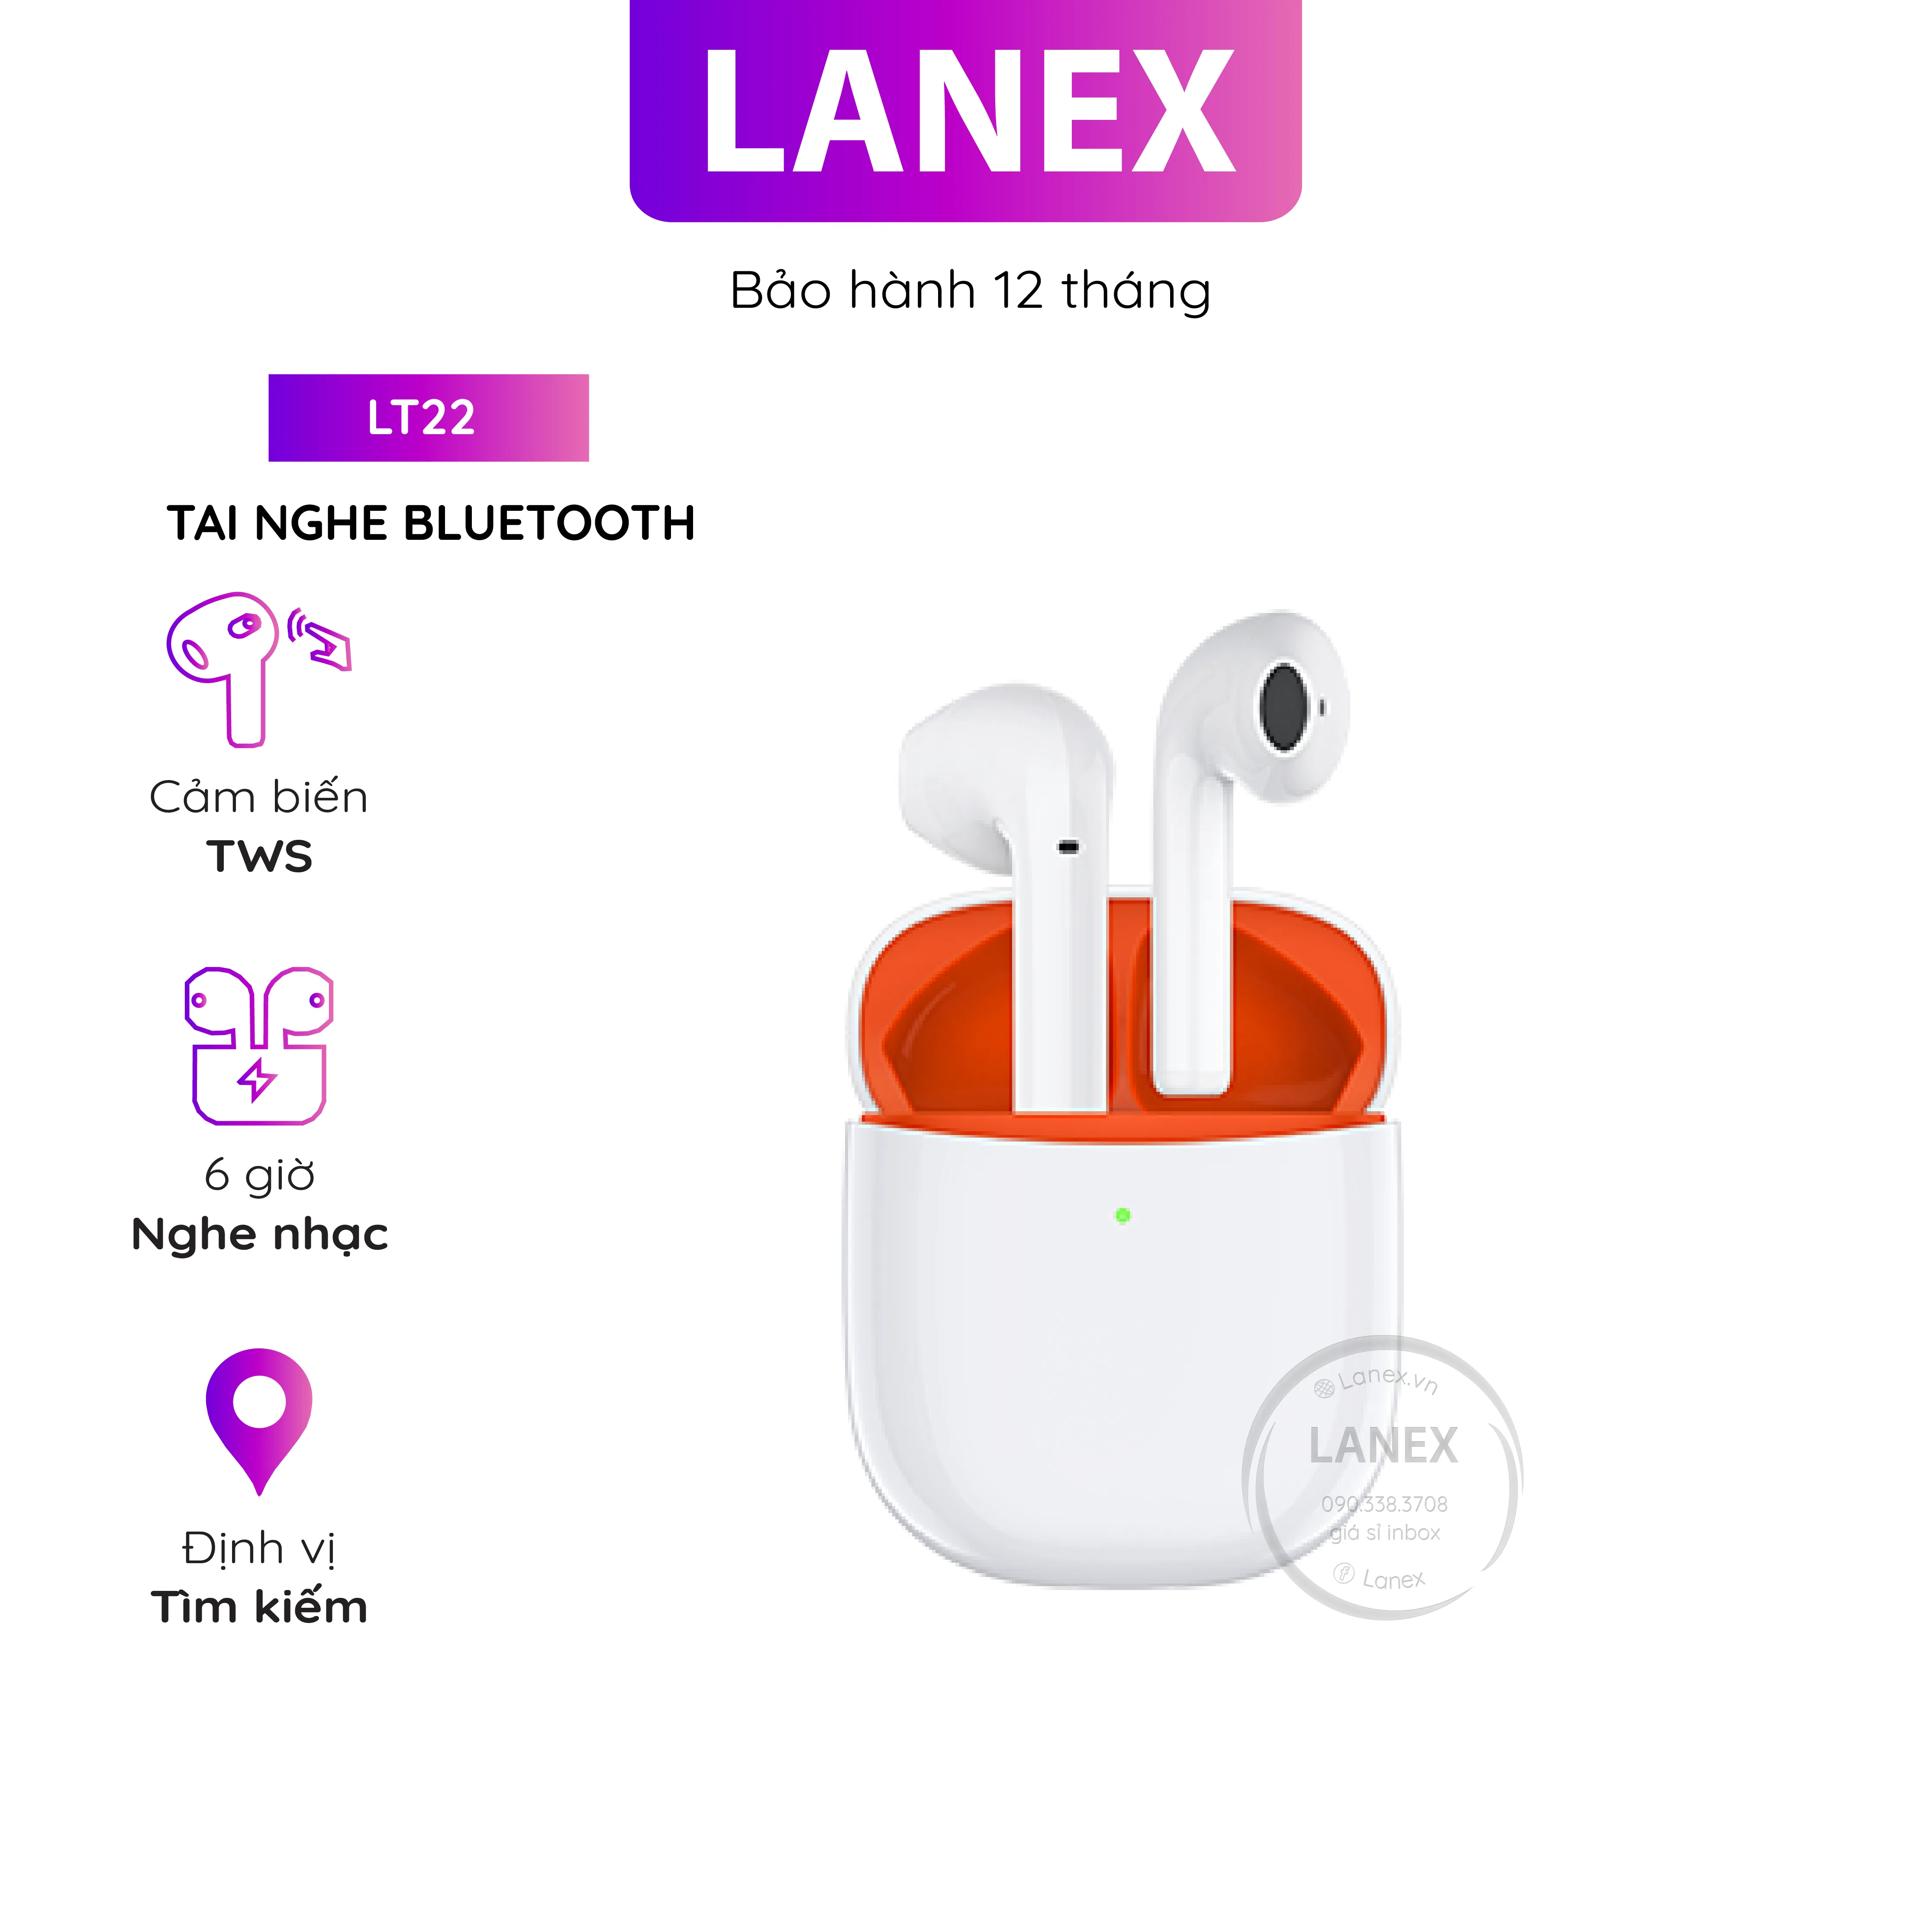 Tai Nghe Bluetooth Lanex Lt22 Cảm Ứng 2 Bên | Chính hãng - Giá rẻ - Chất lượng - Ship toàn quốc